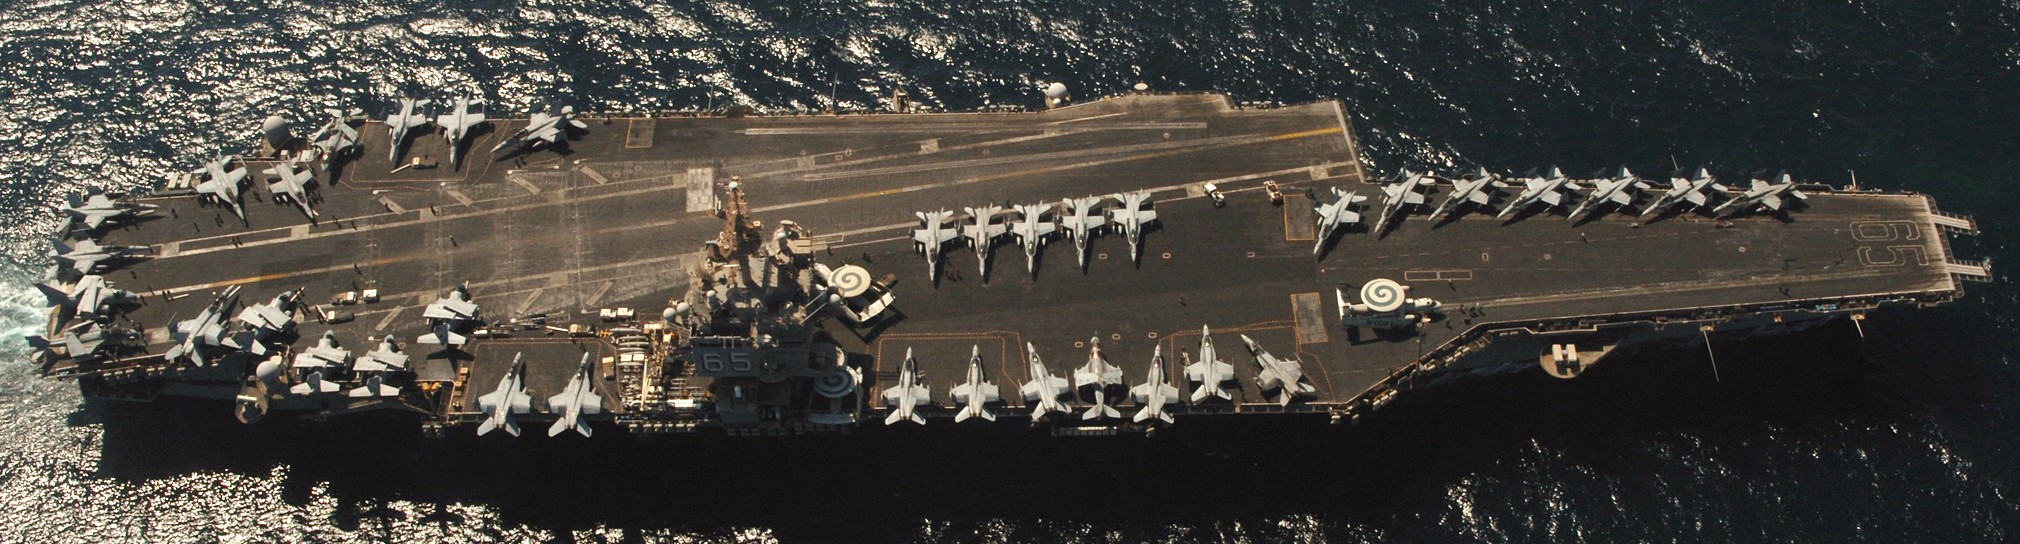 cvn-65 uss enterprise aircraft carrier air wing cvw-1 us navy 41